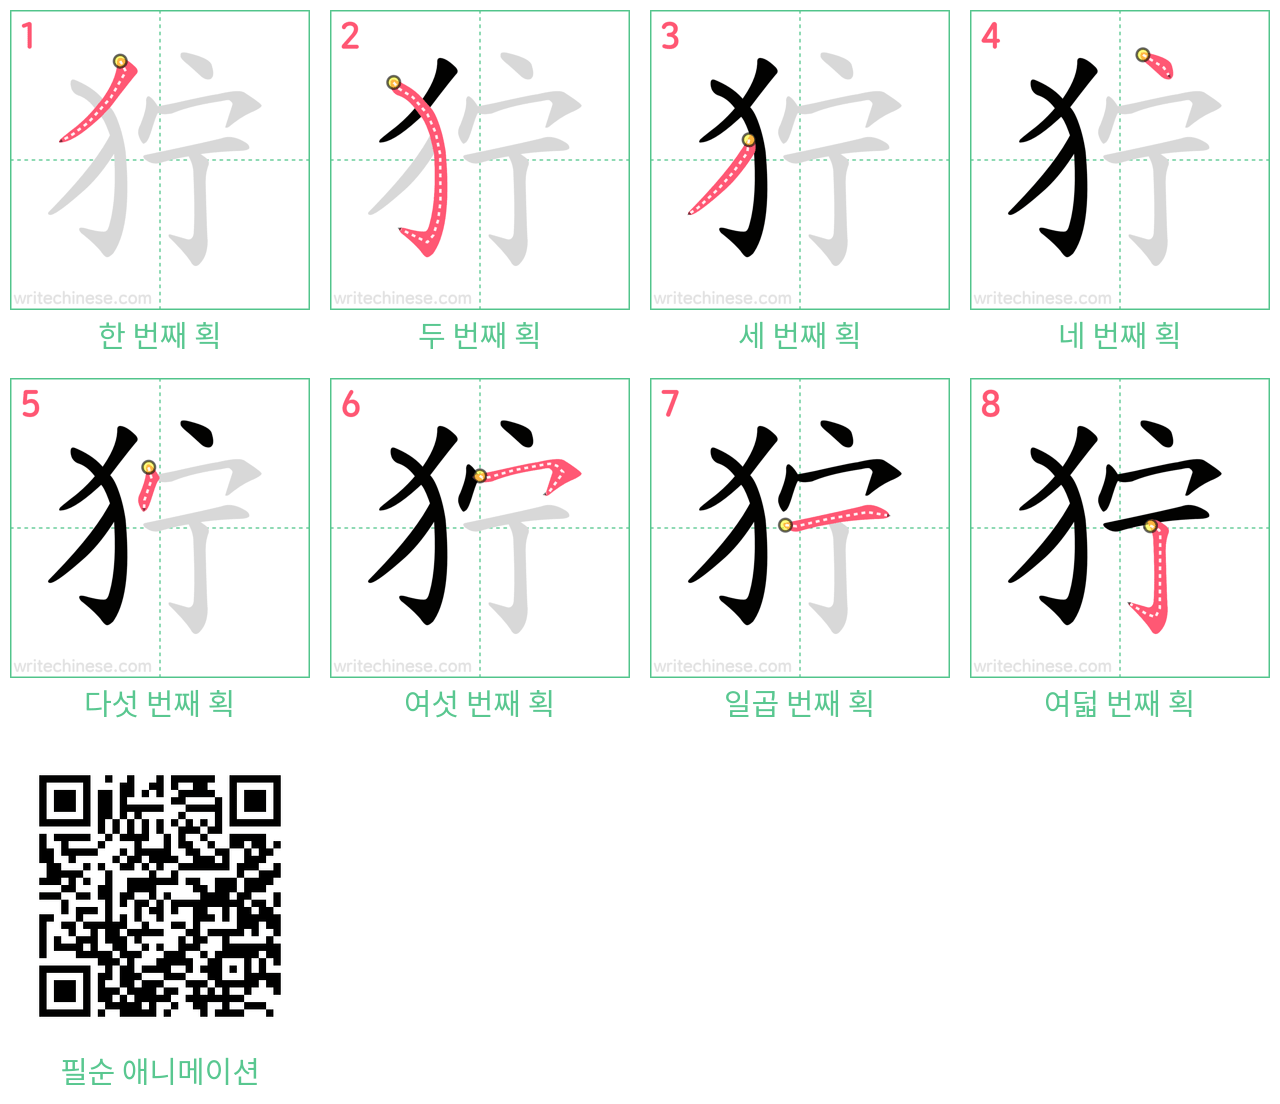 狞 step-by-step stroke order diagrams